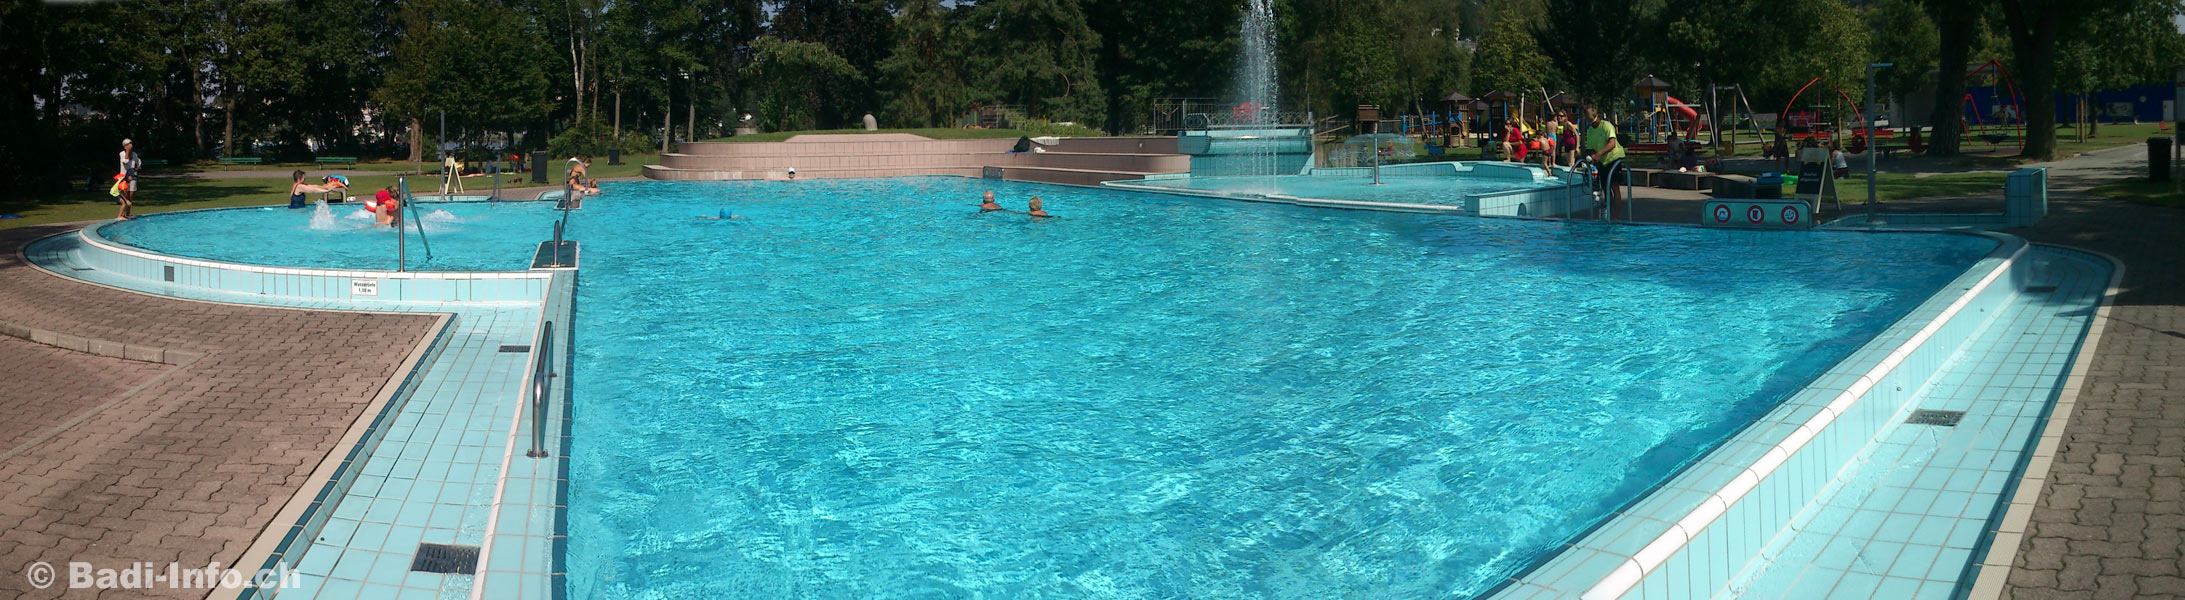 Schwimmbad Lido Luzern